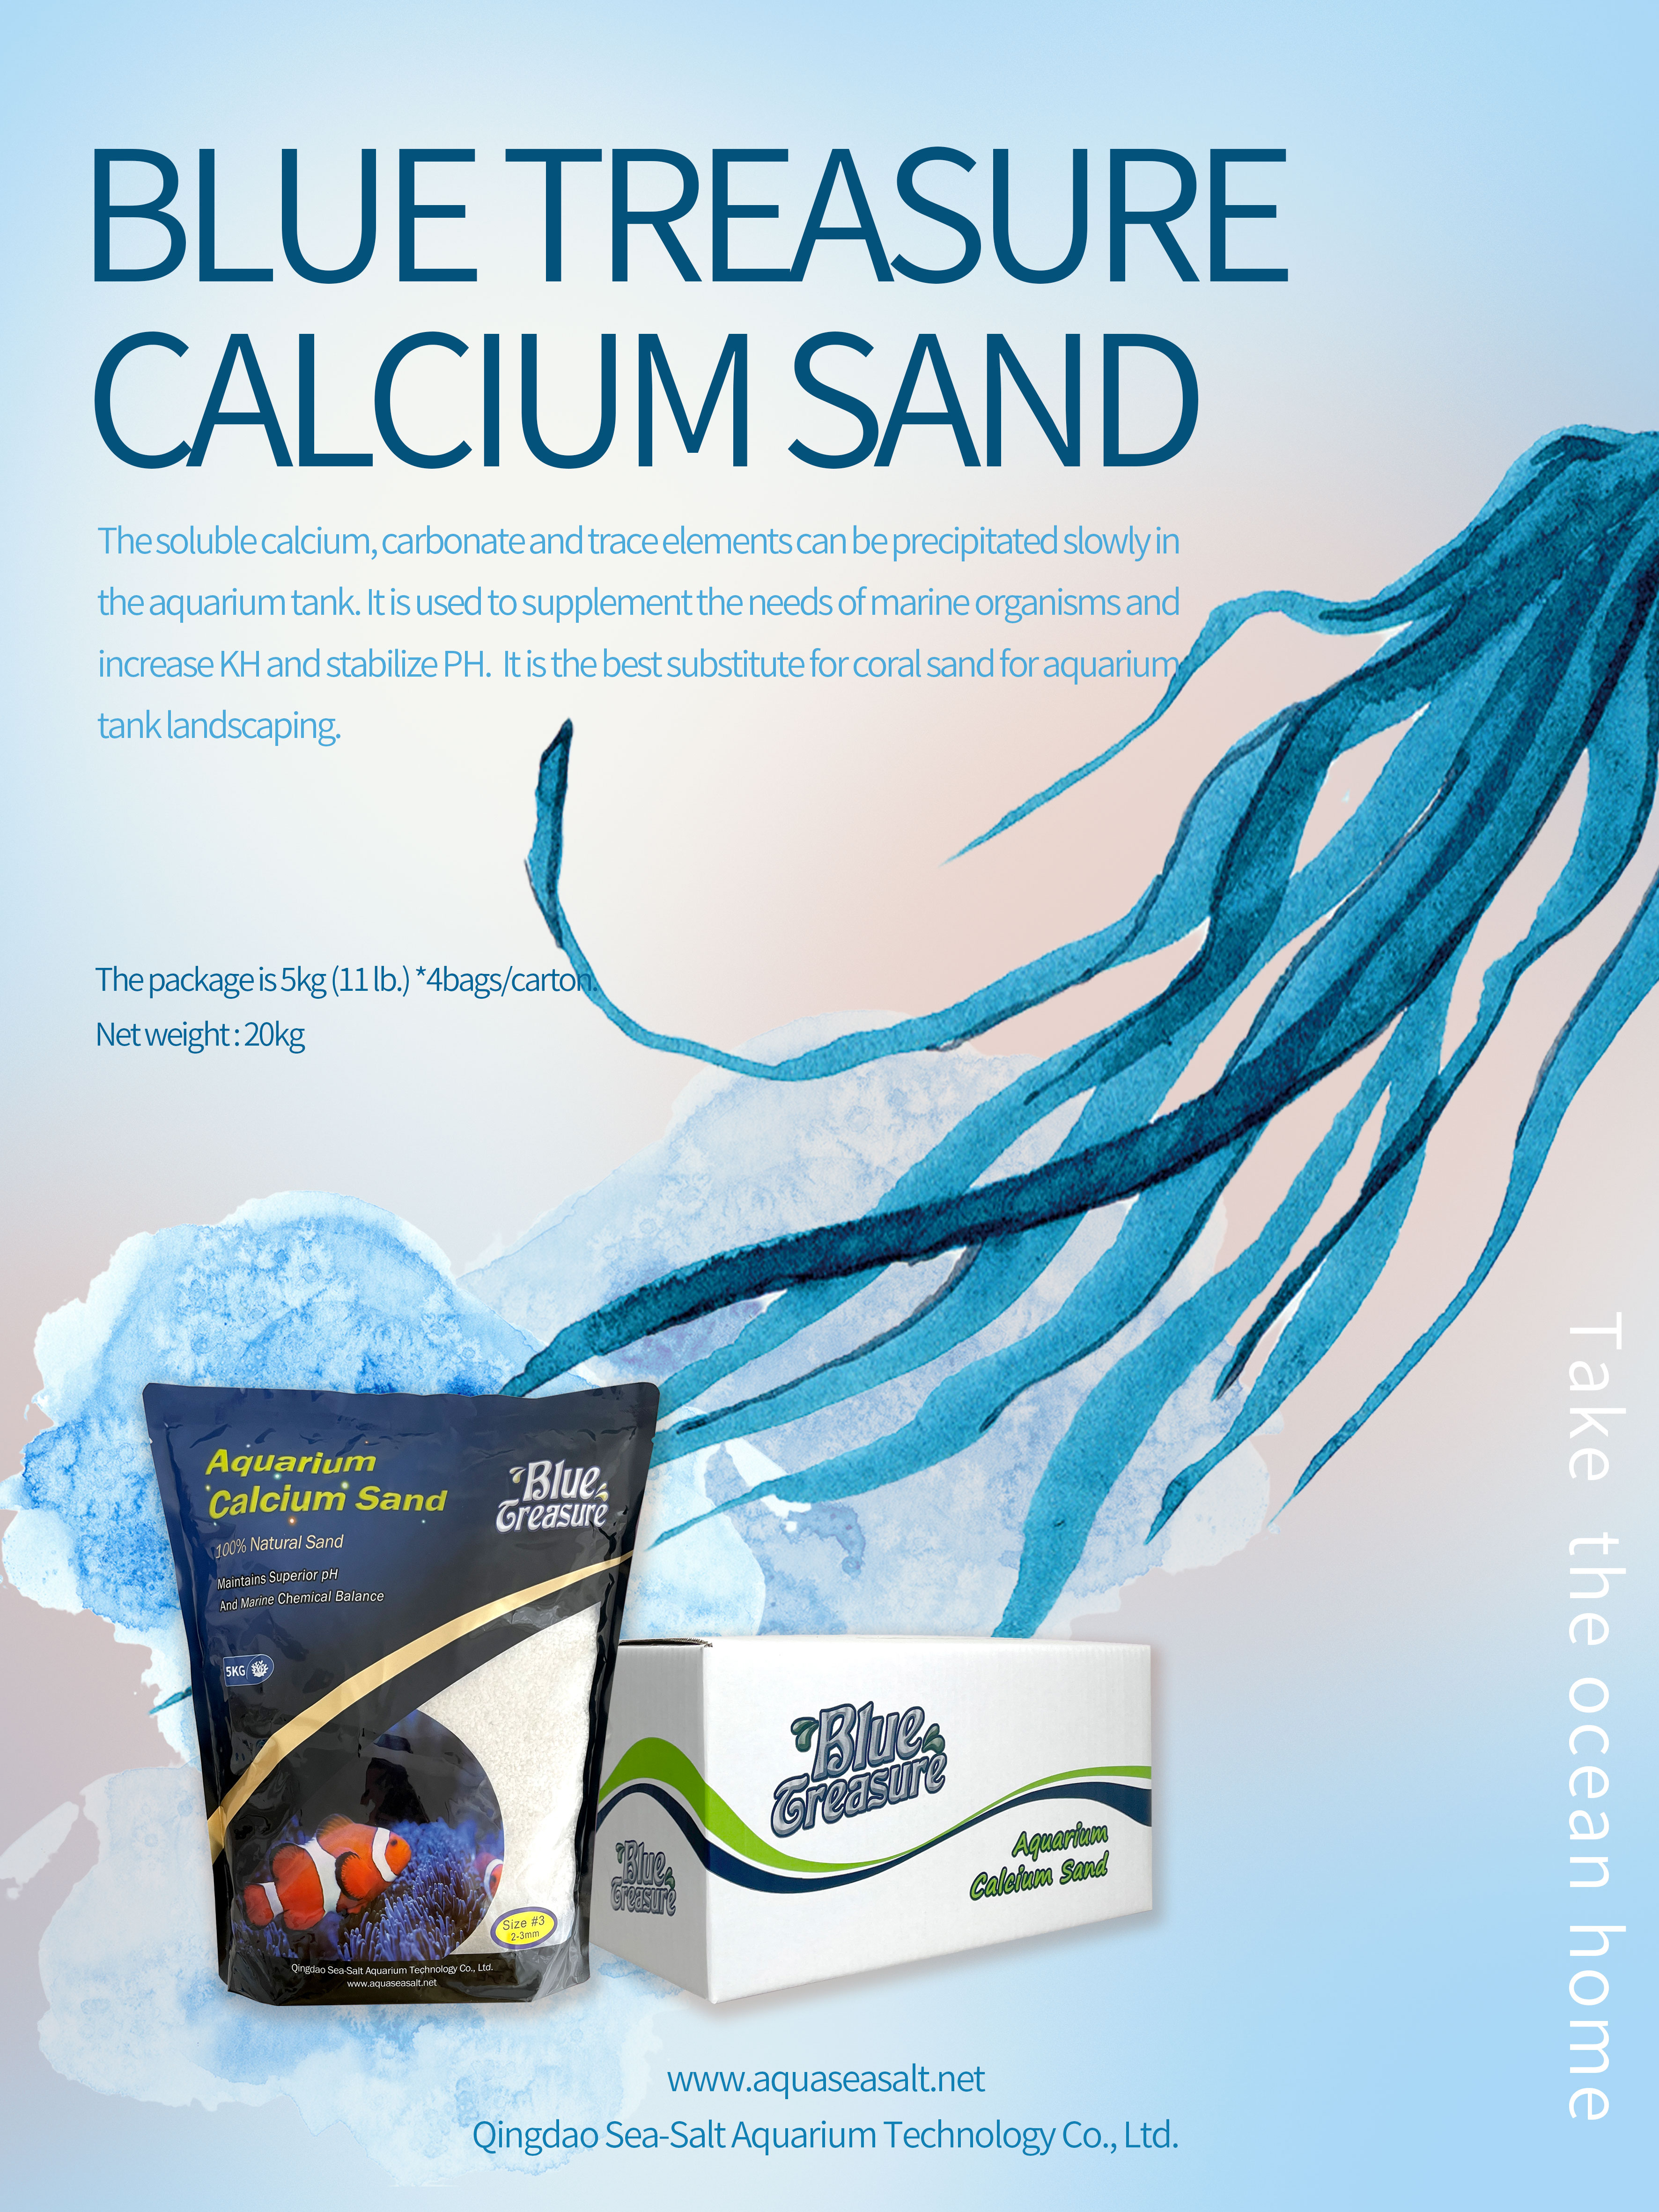 Aquarium calcium sand is a popular substrate used in aquariums for its numerous benefits.